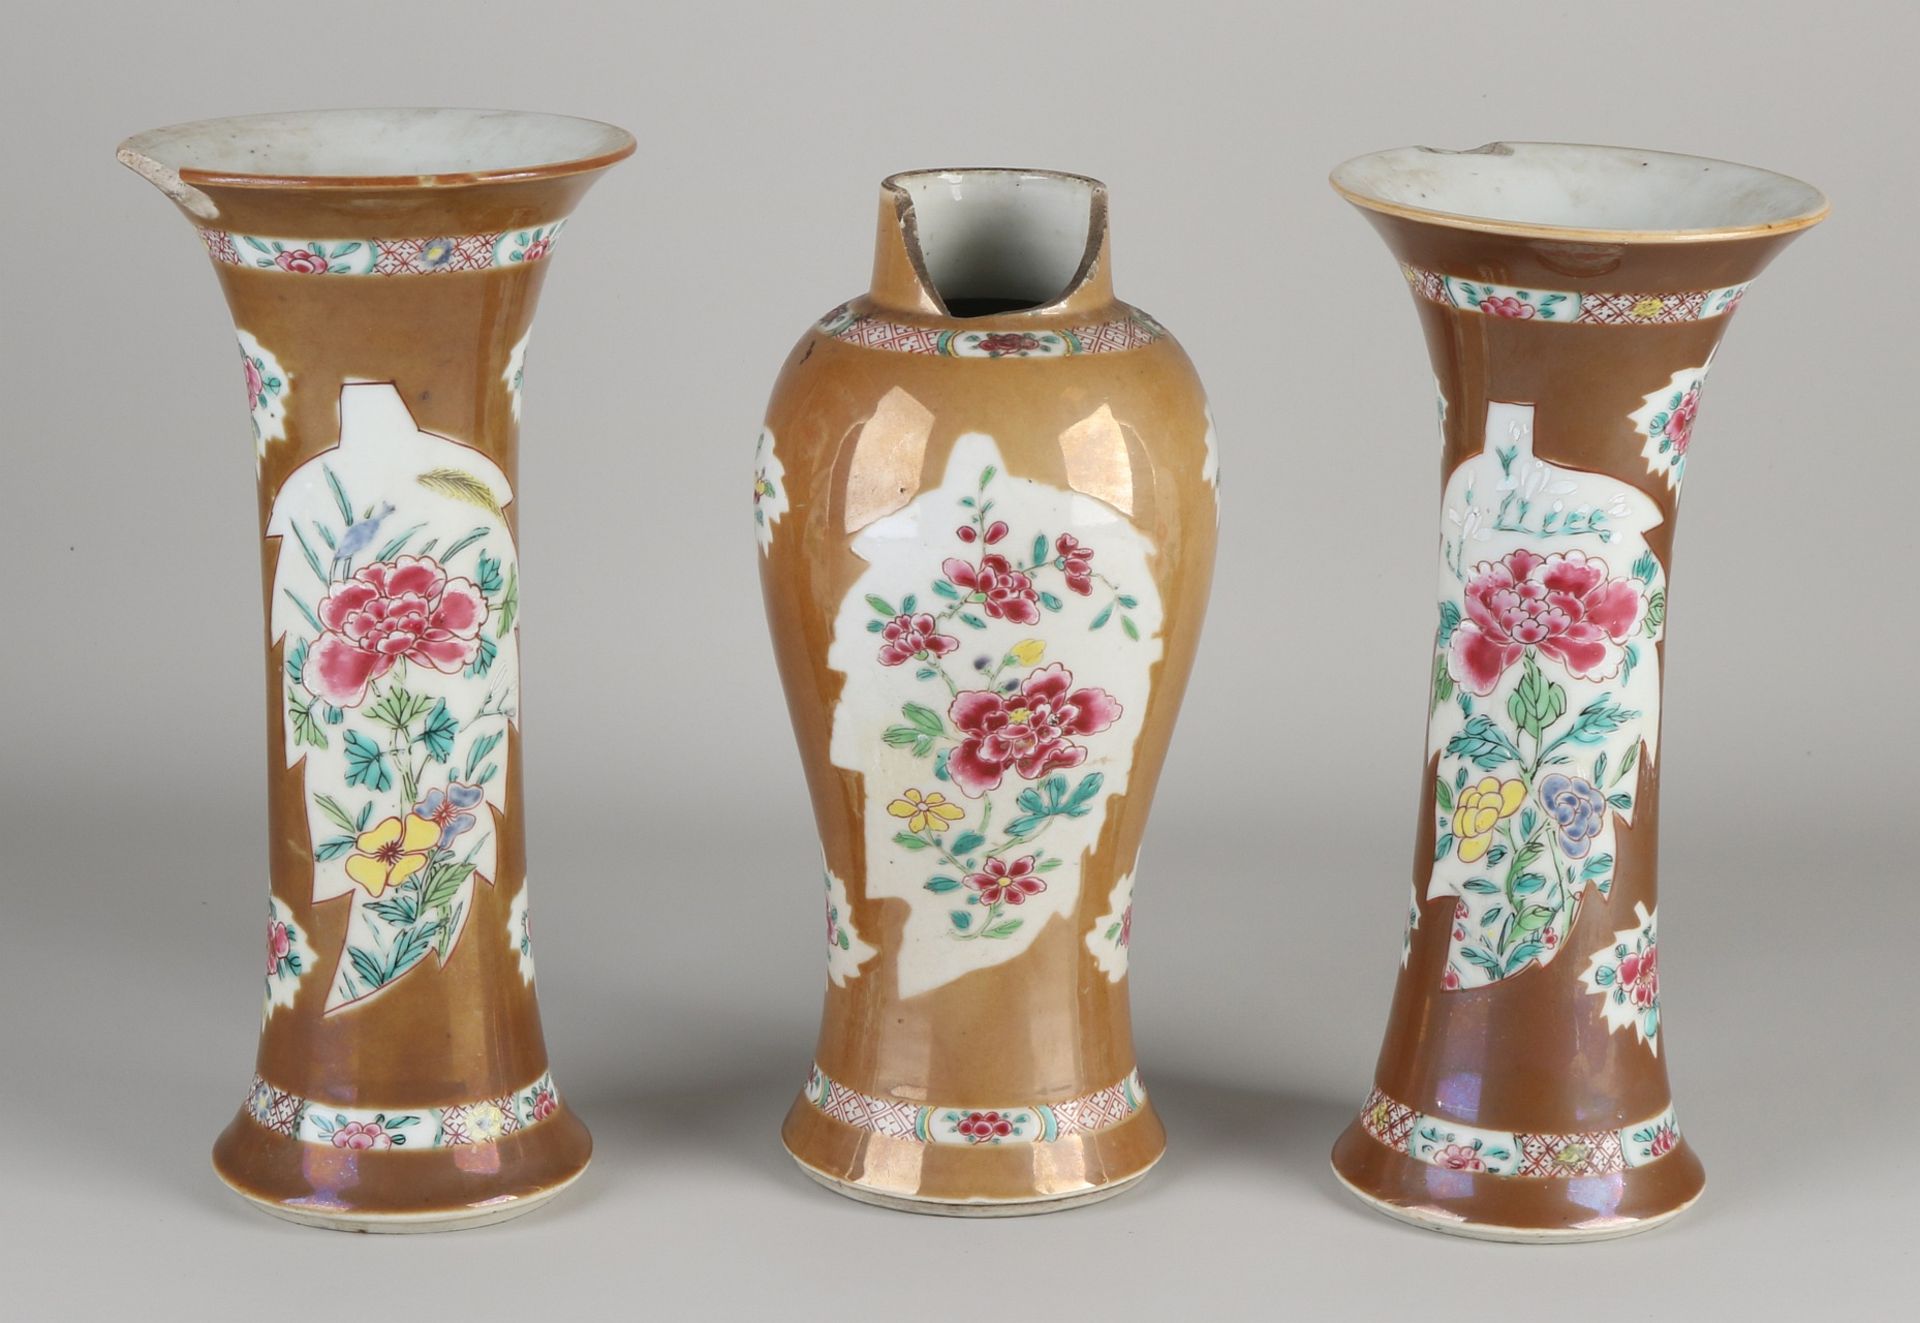 Dreiteilige Familienporzellan-Garnitur aus chinesischem Porzellan aus dem 18. bis 19. Jahrhundert m